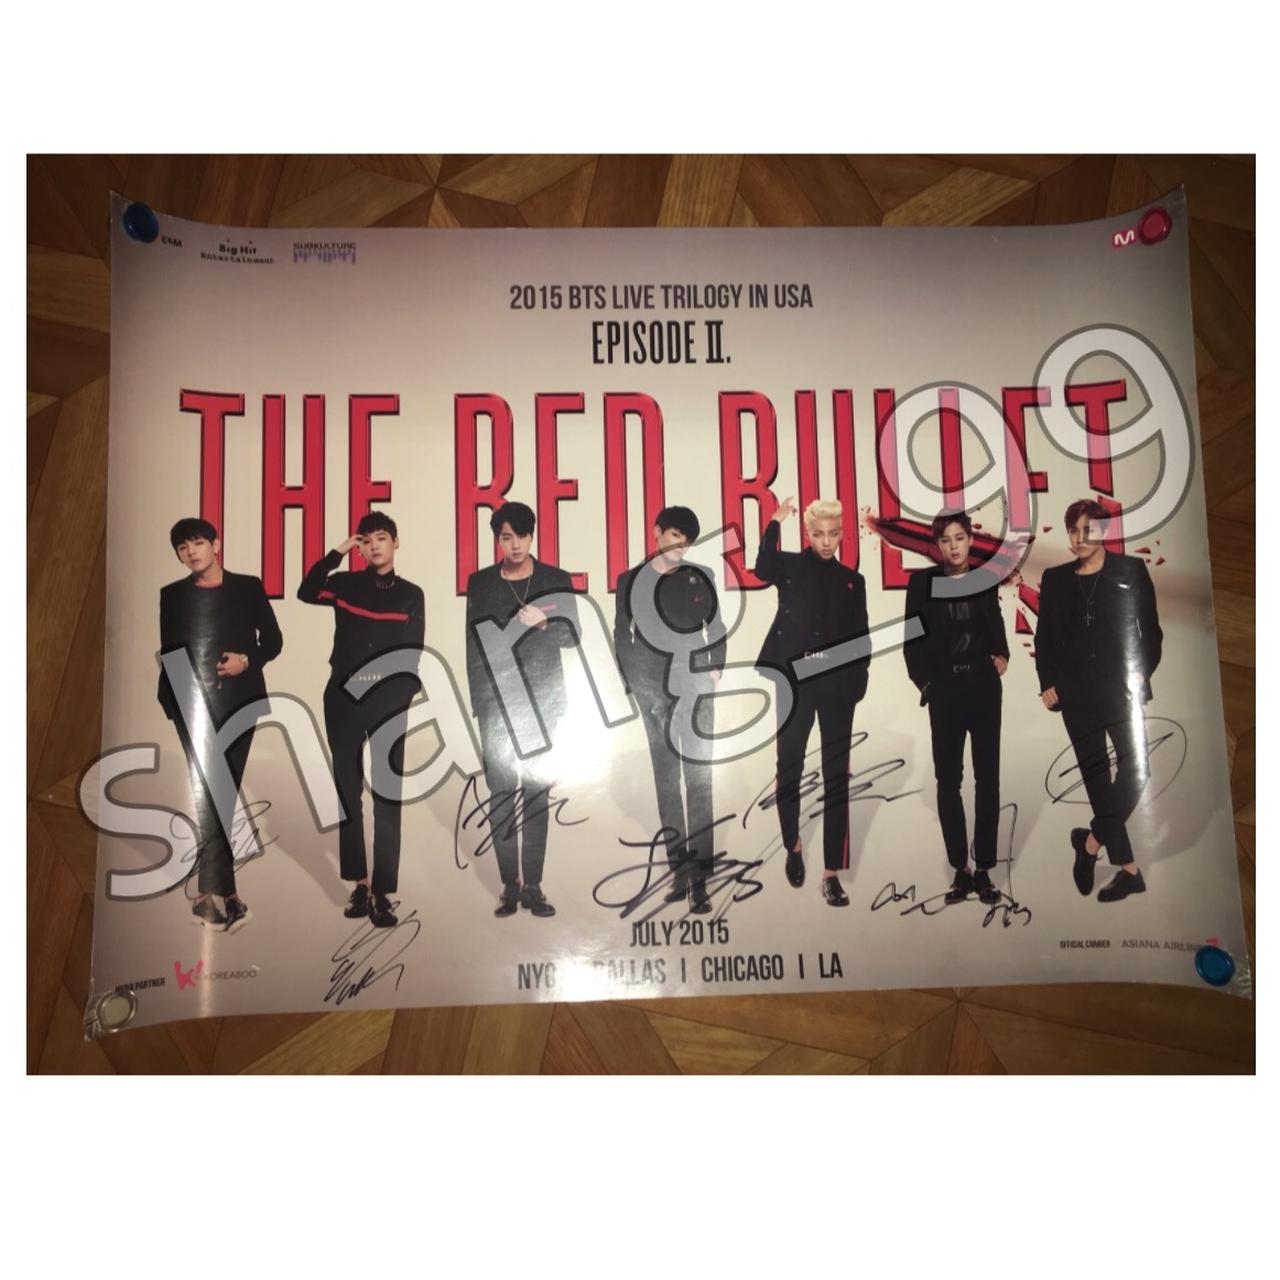 AUTHENTIC AUTOGRAPHED 2015 BTS THE RED BULLET TOUR